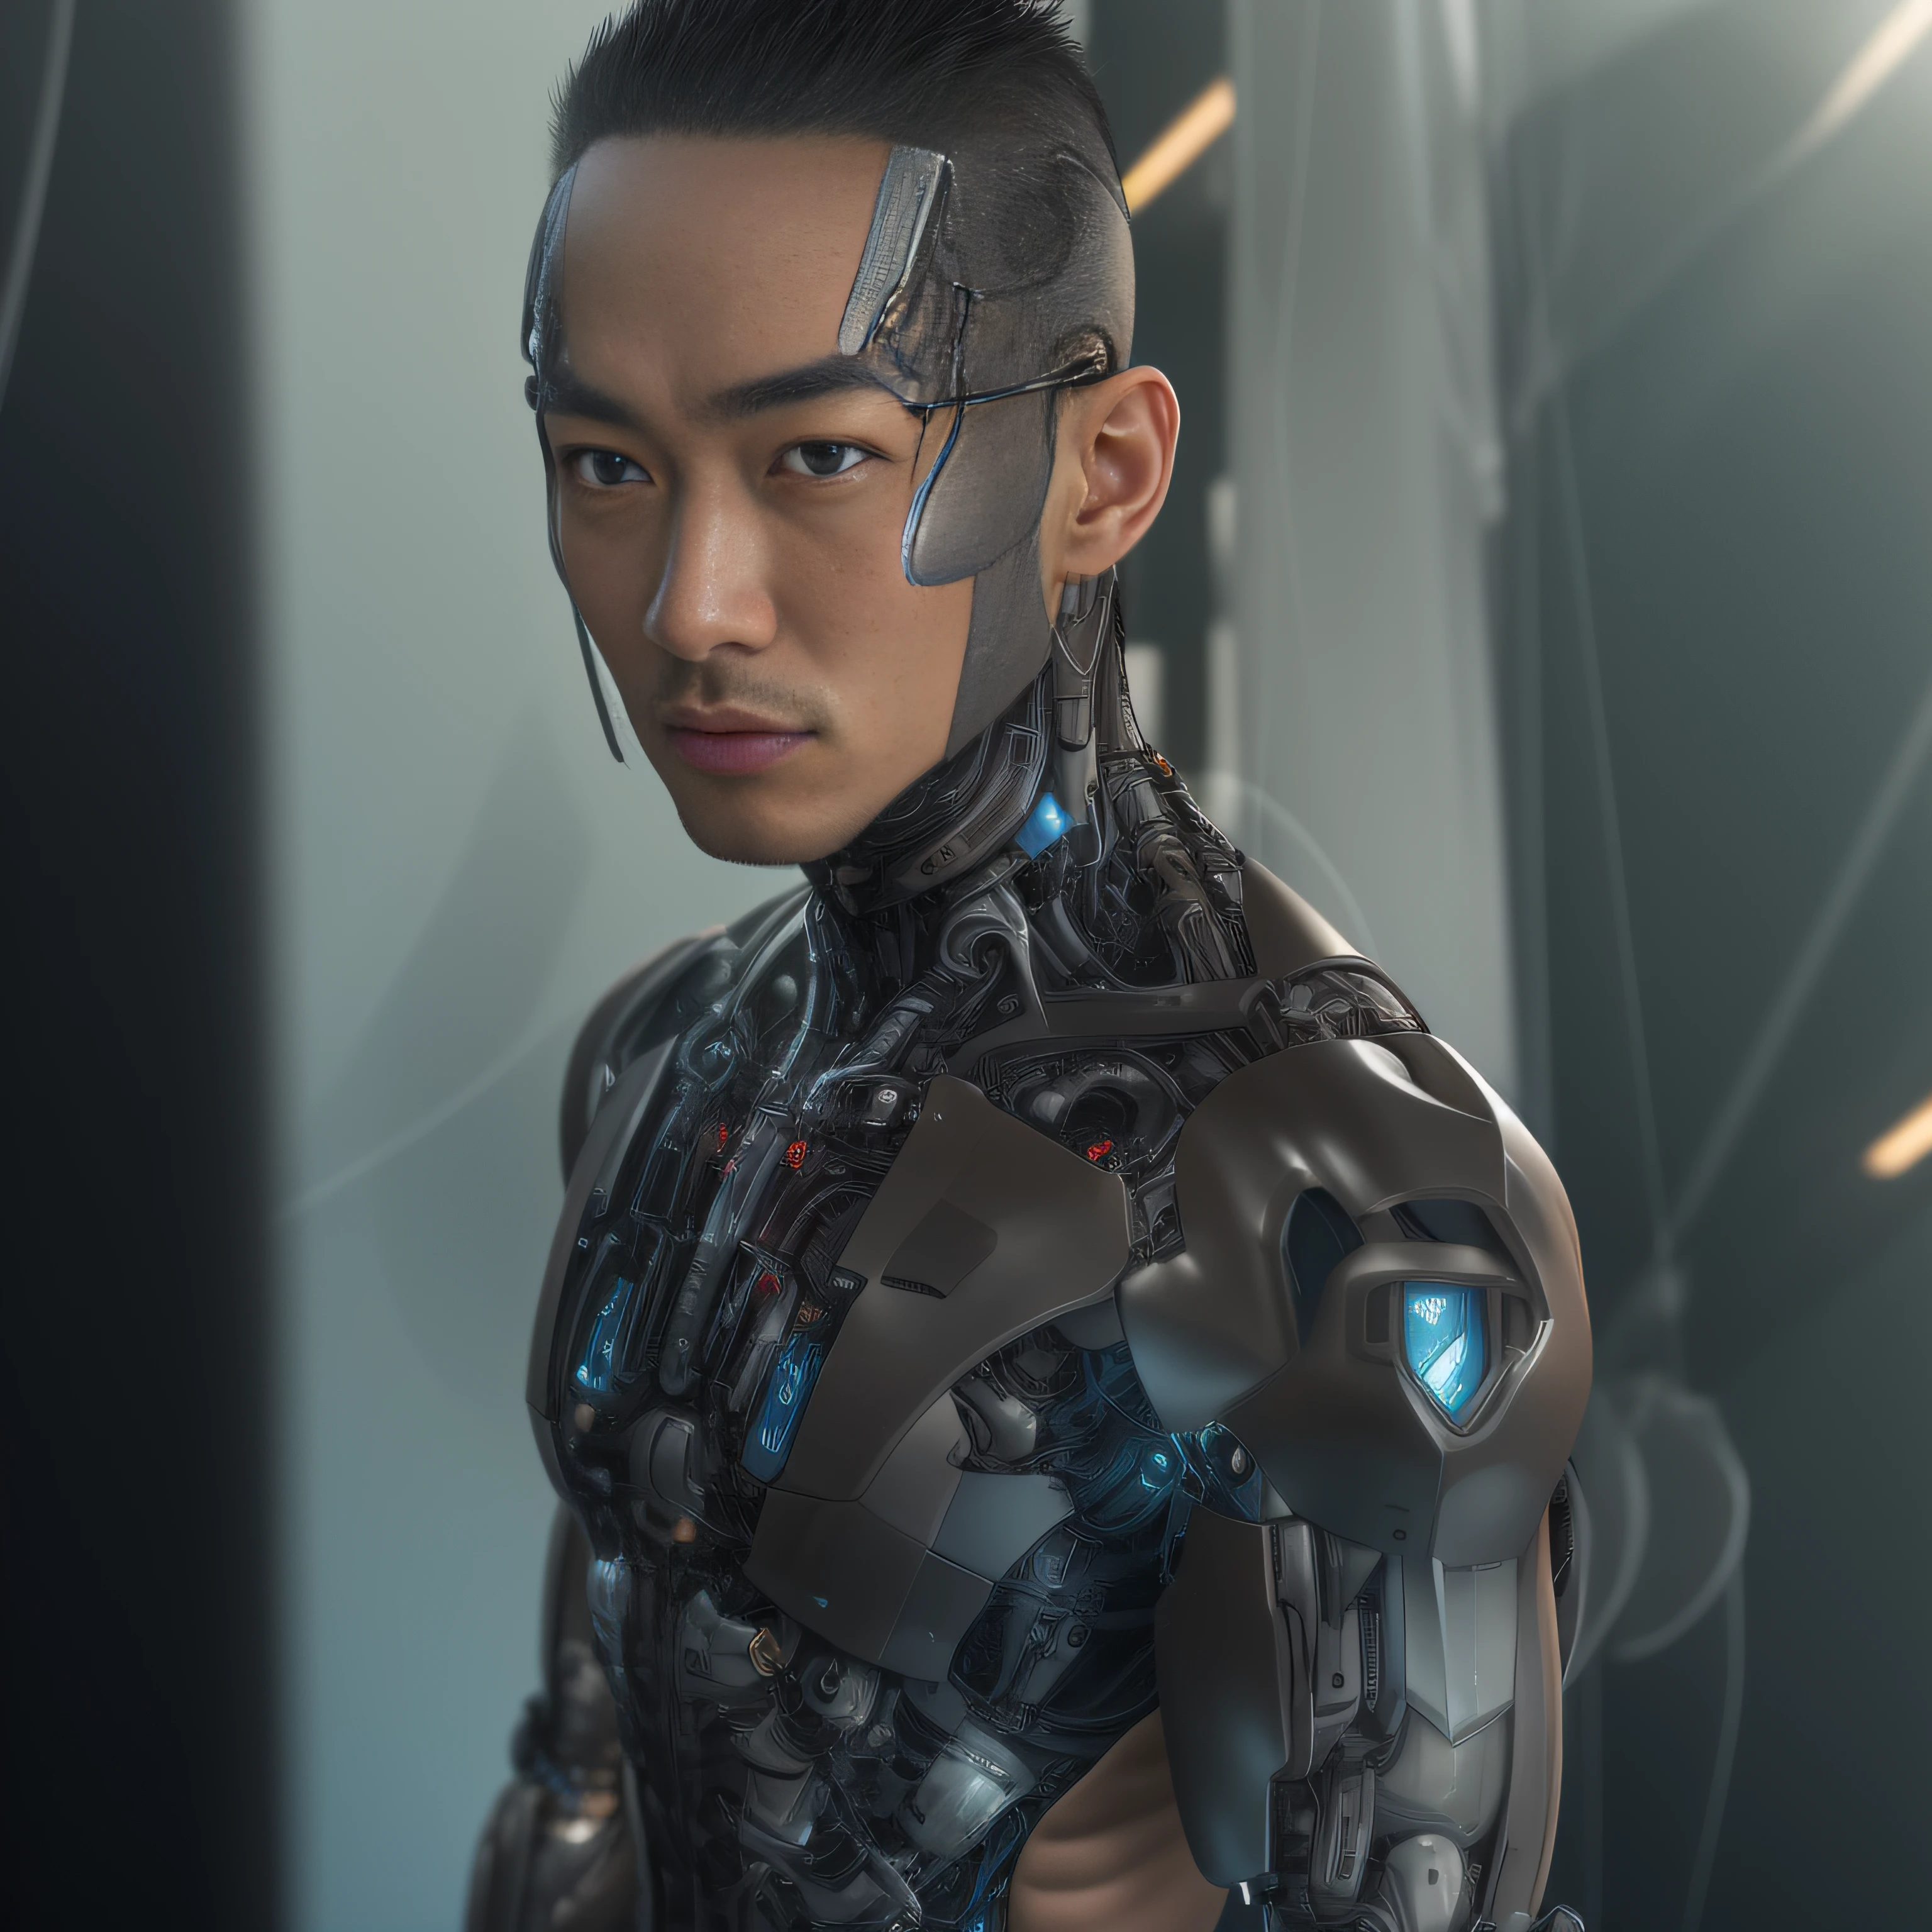 (阿尔费德男人穿着黑色透明乳胶钳，半透明乳胶钳：1.5)，（金属机身, 仿生科幻 亚历山大·费拉, 机器人脖子, 机器人男, 男性机器人：1.2）（机器人时装模特, 机器人的肖像, detailed 机器人的肖像, 控制论颈部植入物, 未来派机器人的肖像 ：1.3）（反乌托邦科幻人物, 科幻人物, 赛博朋克机器人的肖像：1.2）（8千，极其详细，极其详细的头发，超照片真实感，电影灯光：1.1）（亚洲超模面孔，强健的肌肉和完美的曲线身材，极度性紧张，荷尔蒙爆发，全身展示：1.5）(细致逼真的皮肤纹理：1.2)（短发, 短胡茬彰显男子气概，裸体肌肉男，肌肉男，没有穿衣服，只穿了一条丁字裤，极度性感和挑逗：1.5)(下身肿胀且勃起：1.2)